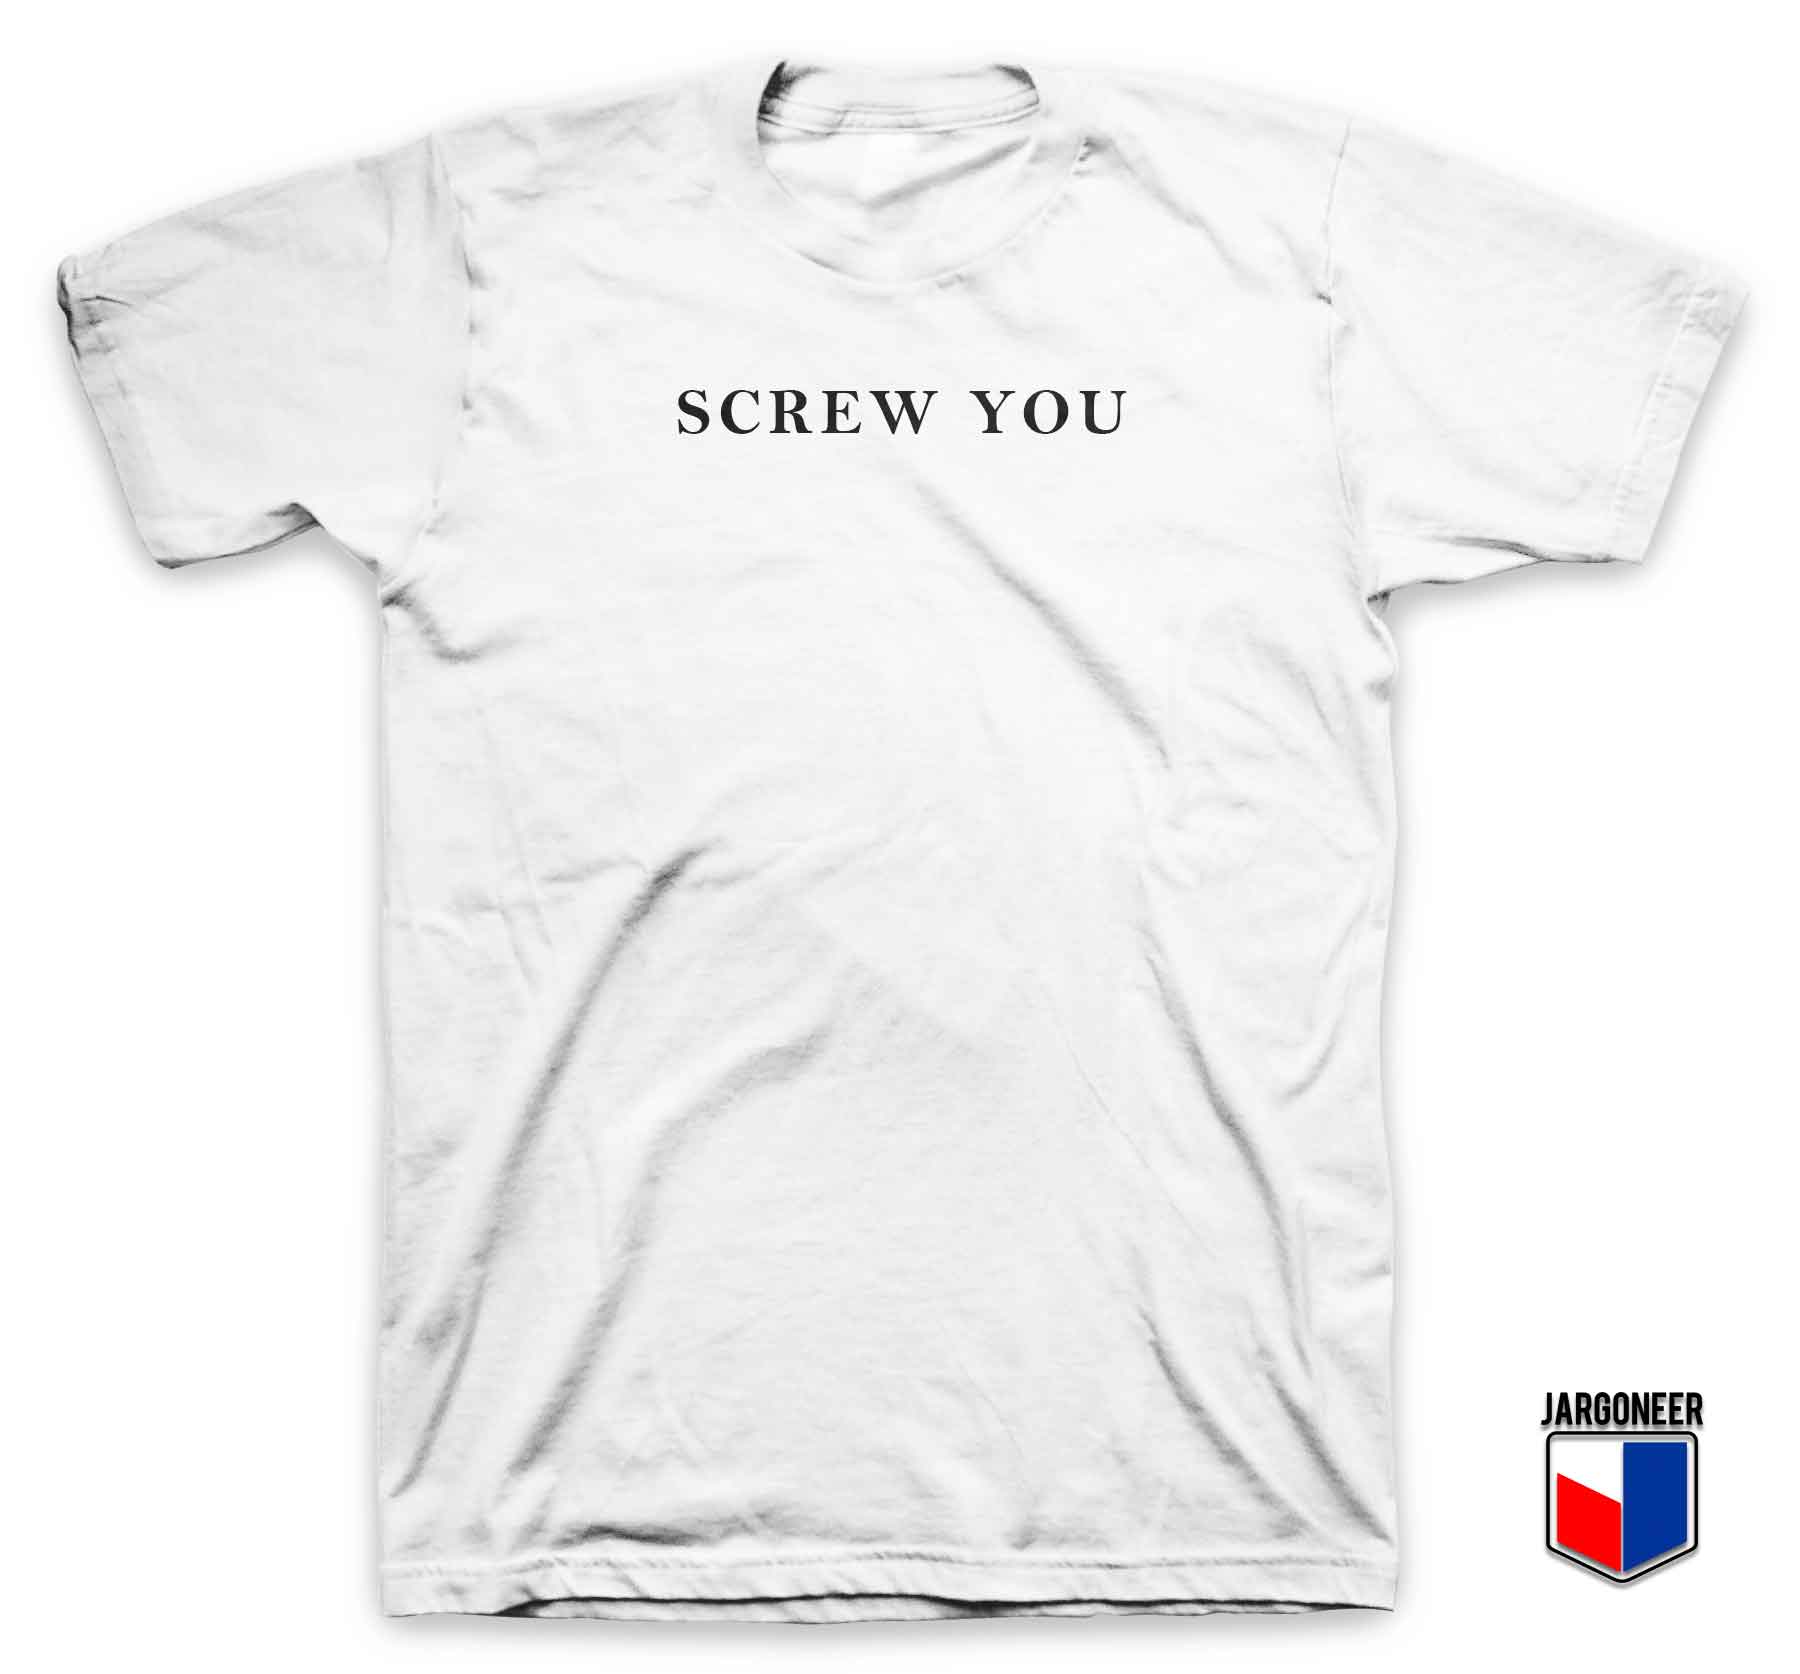 Screw You - Shop Unique Graphic Cool Shirt Designs